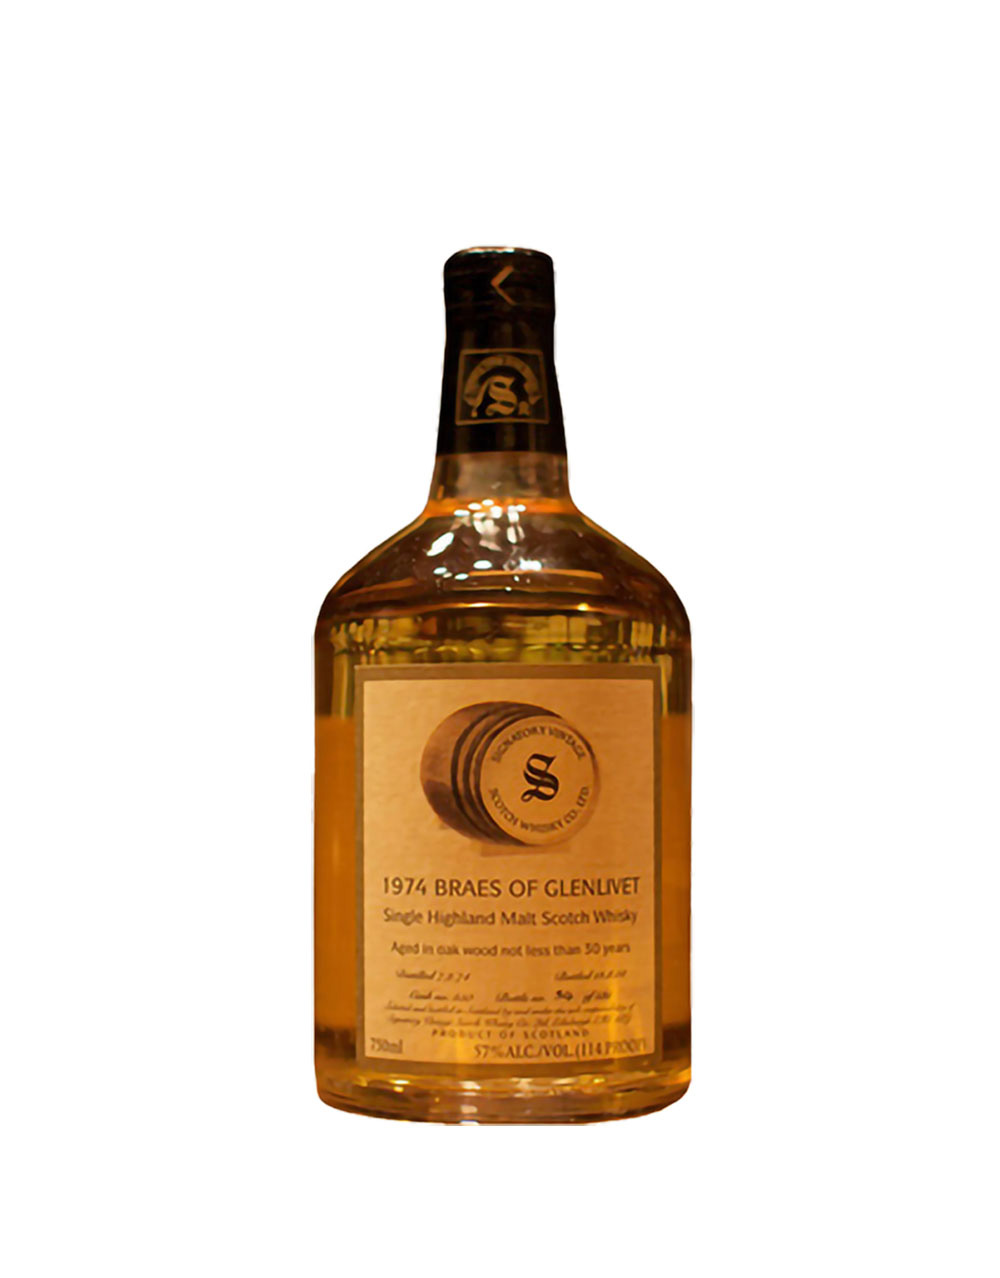 Braes of Glenlivet 30 Year Old Single Malt Scotch Whisky (Signatory Bottling)